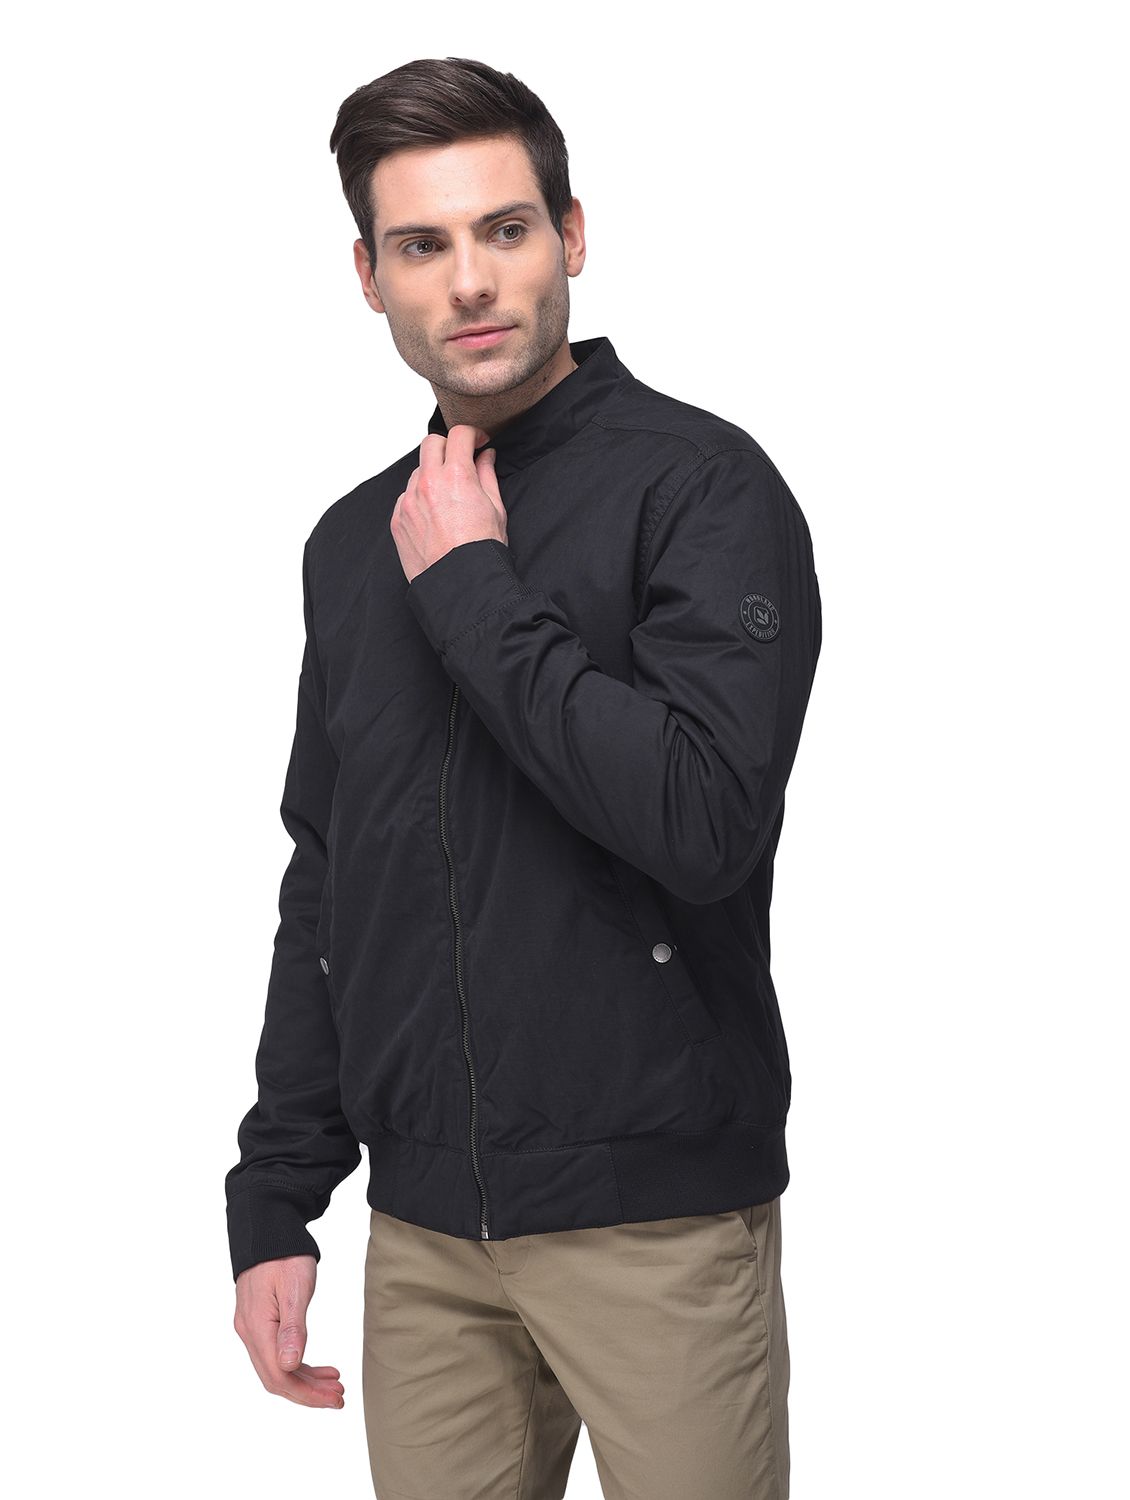 Black long sleeves jacket